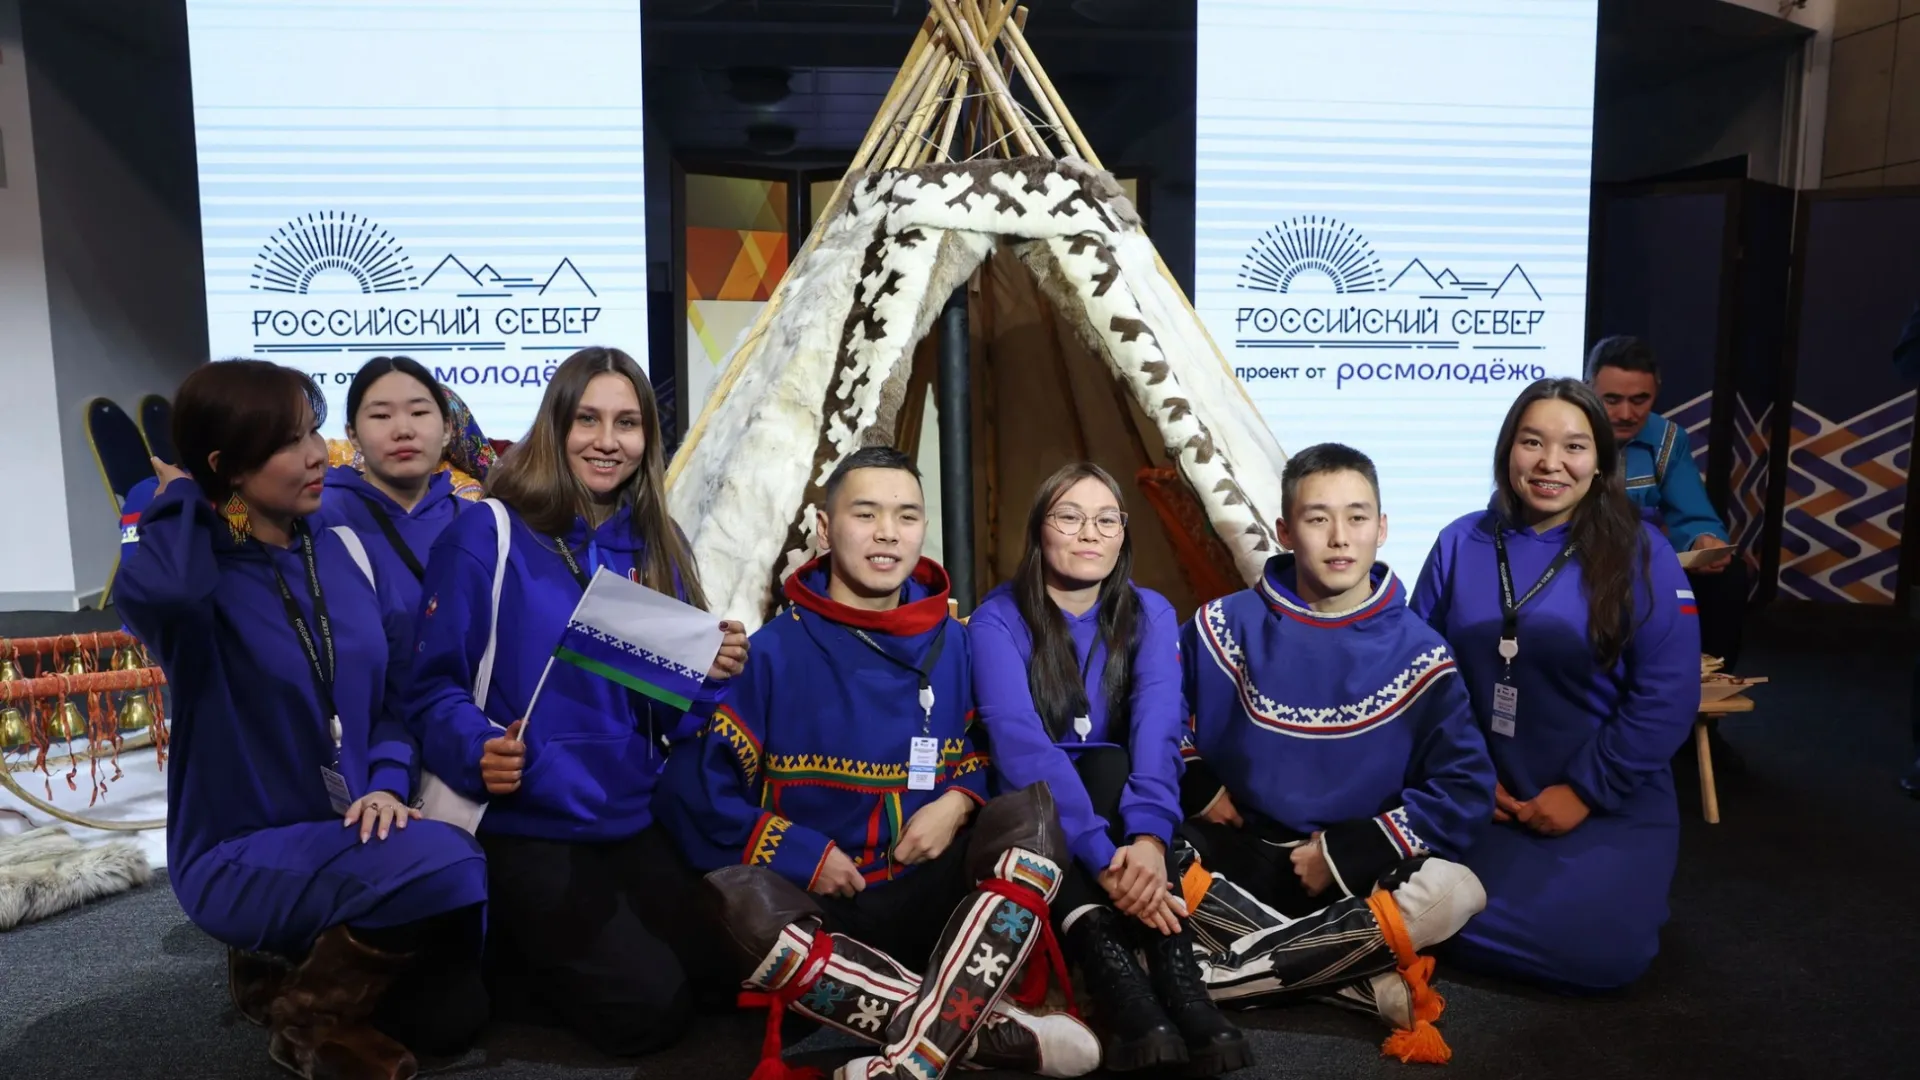 Ямальцы поедут на фестиваль молодежи в Сочи. Фото: Андрей Ткачев / «Ямал-Медиа»